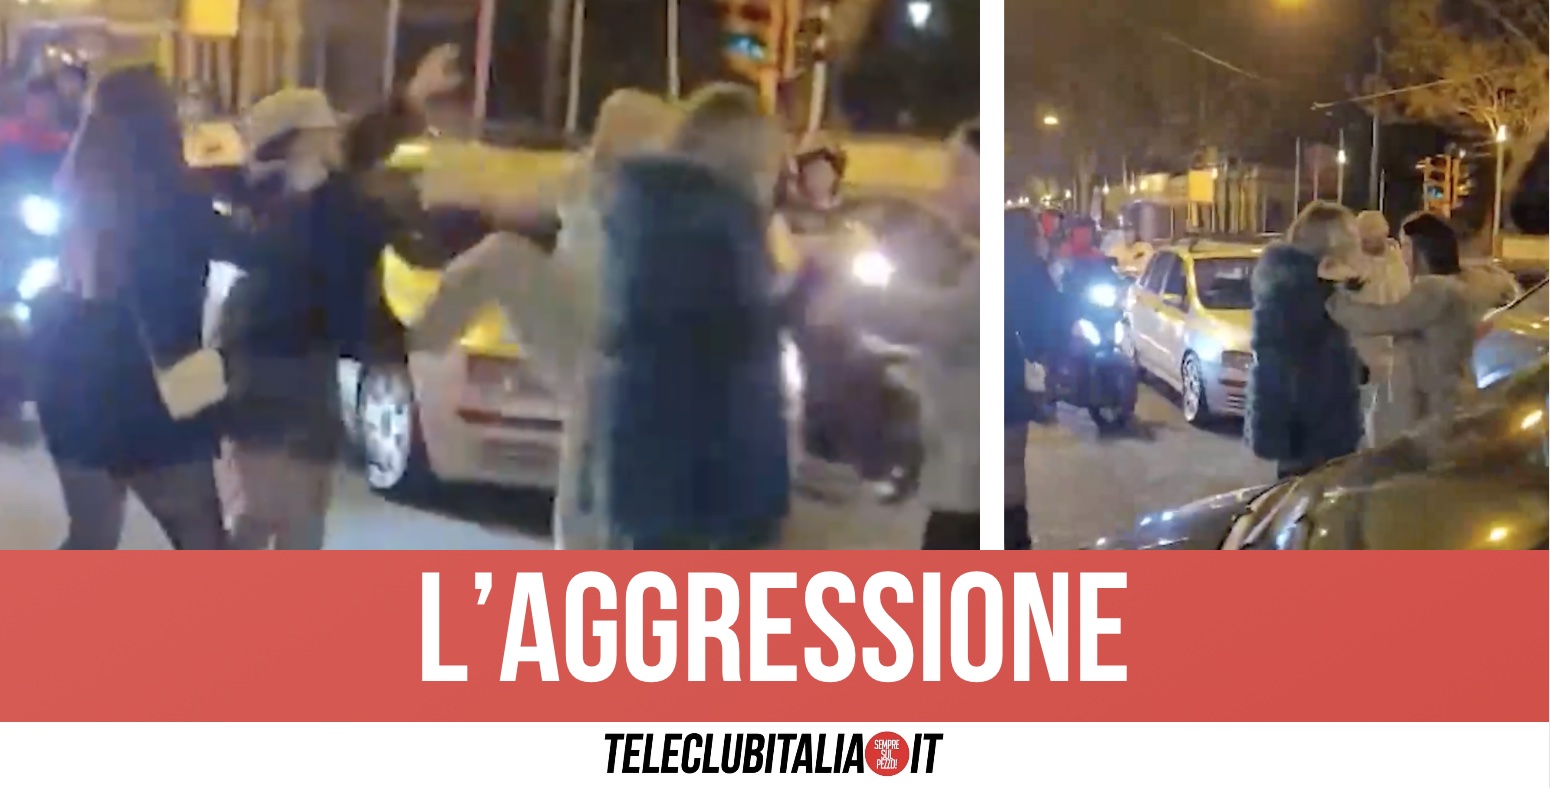 Napoli, violenta rissa alla vigilia di Natale: donna presa a calci in strada dopo lite